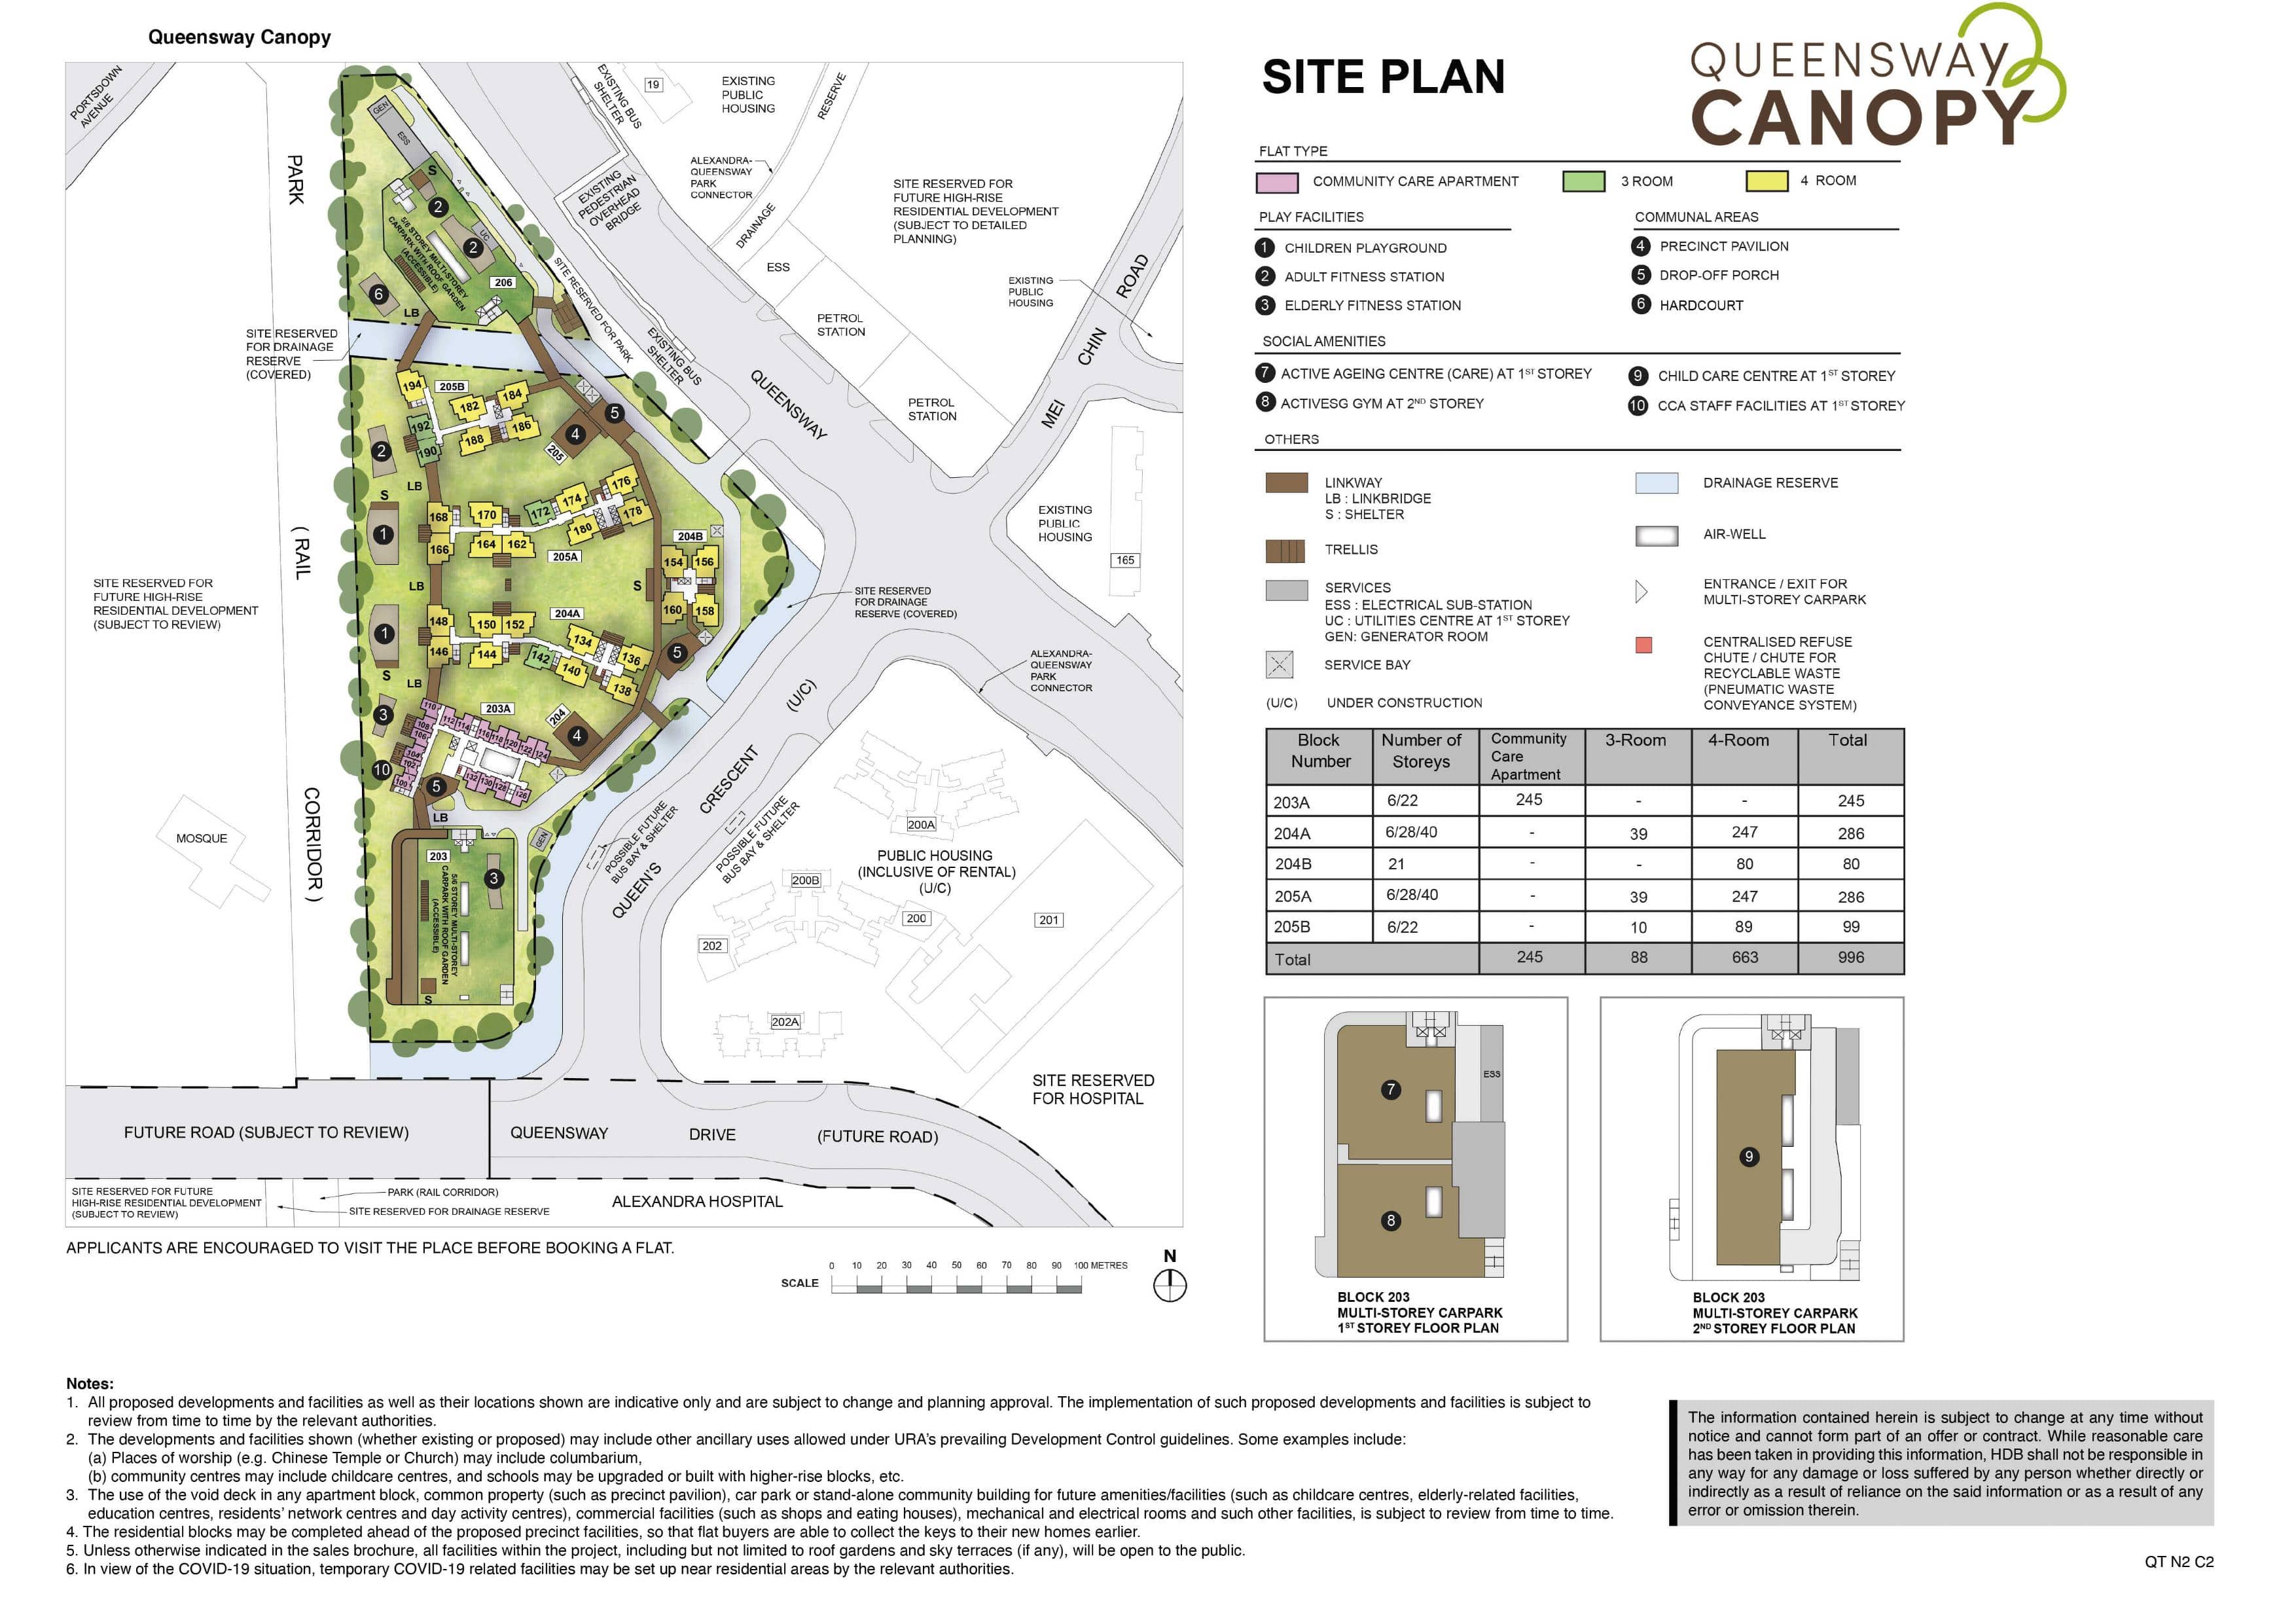 Queensway Canopy Site Plan